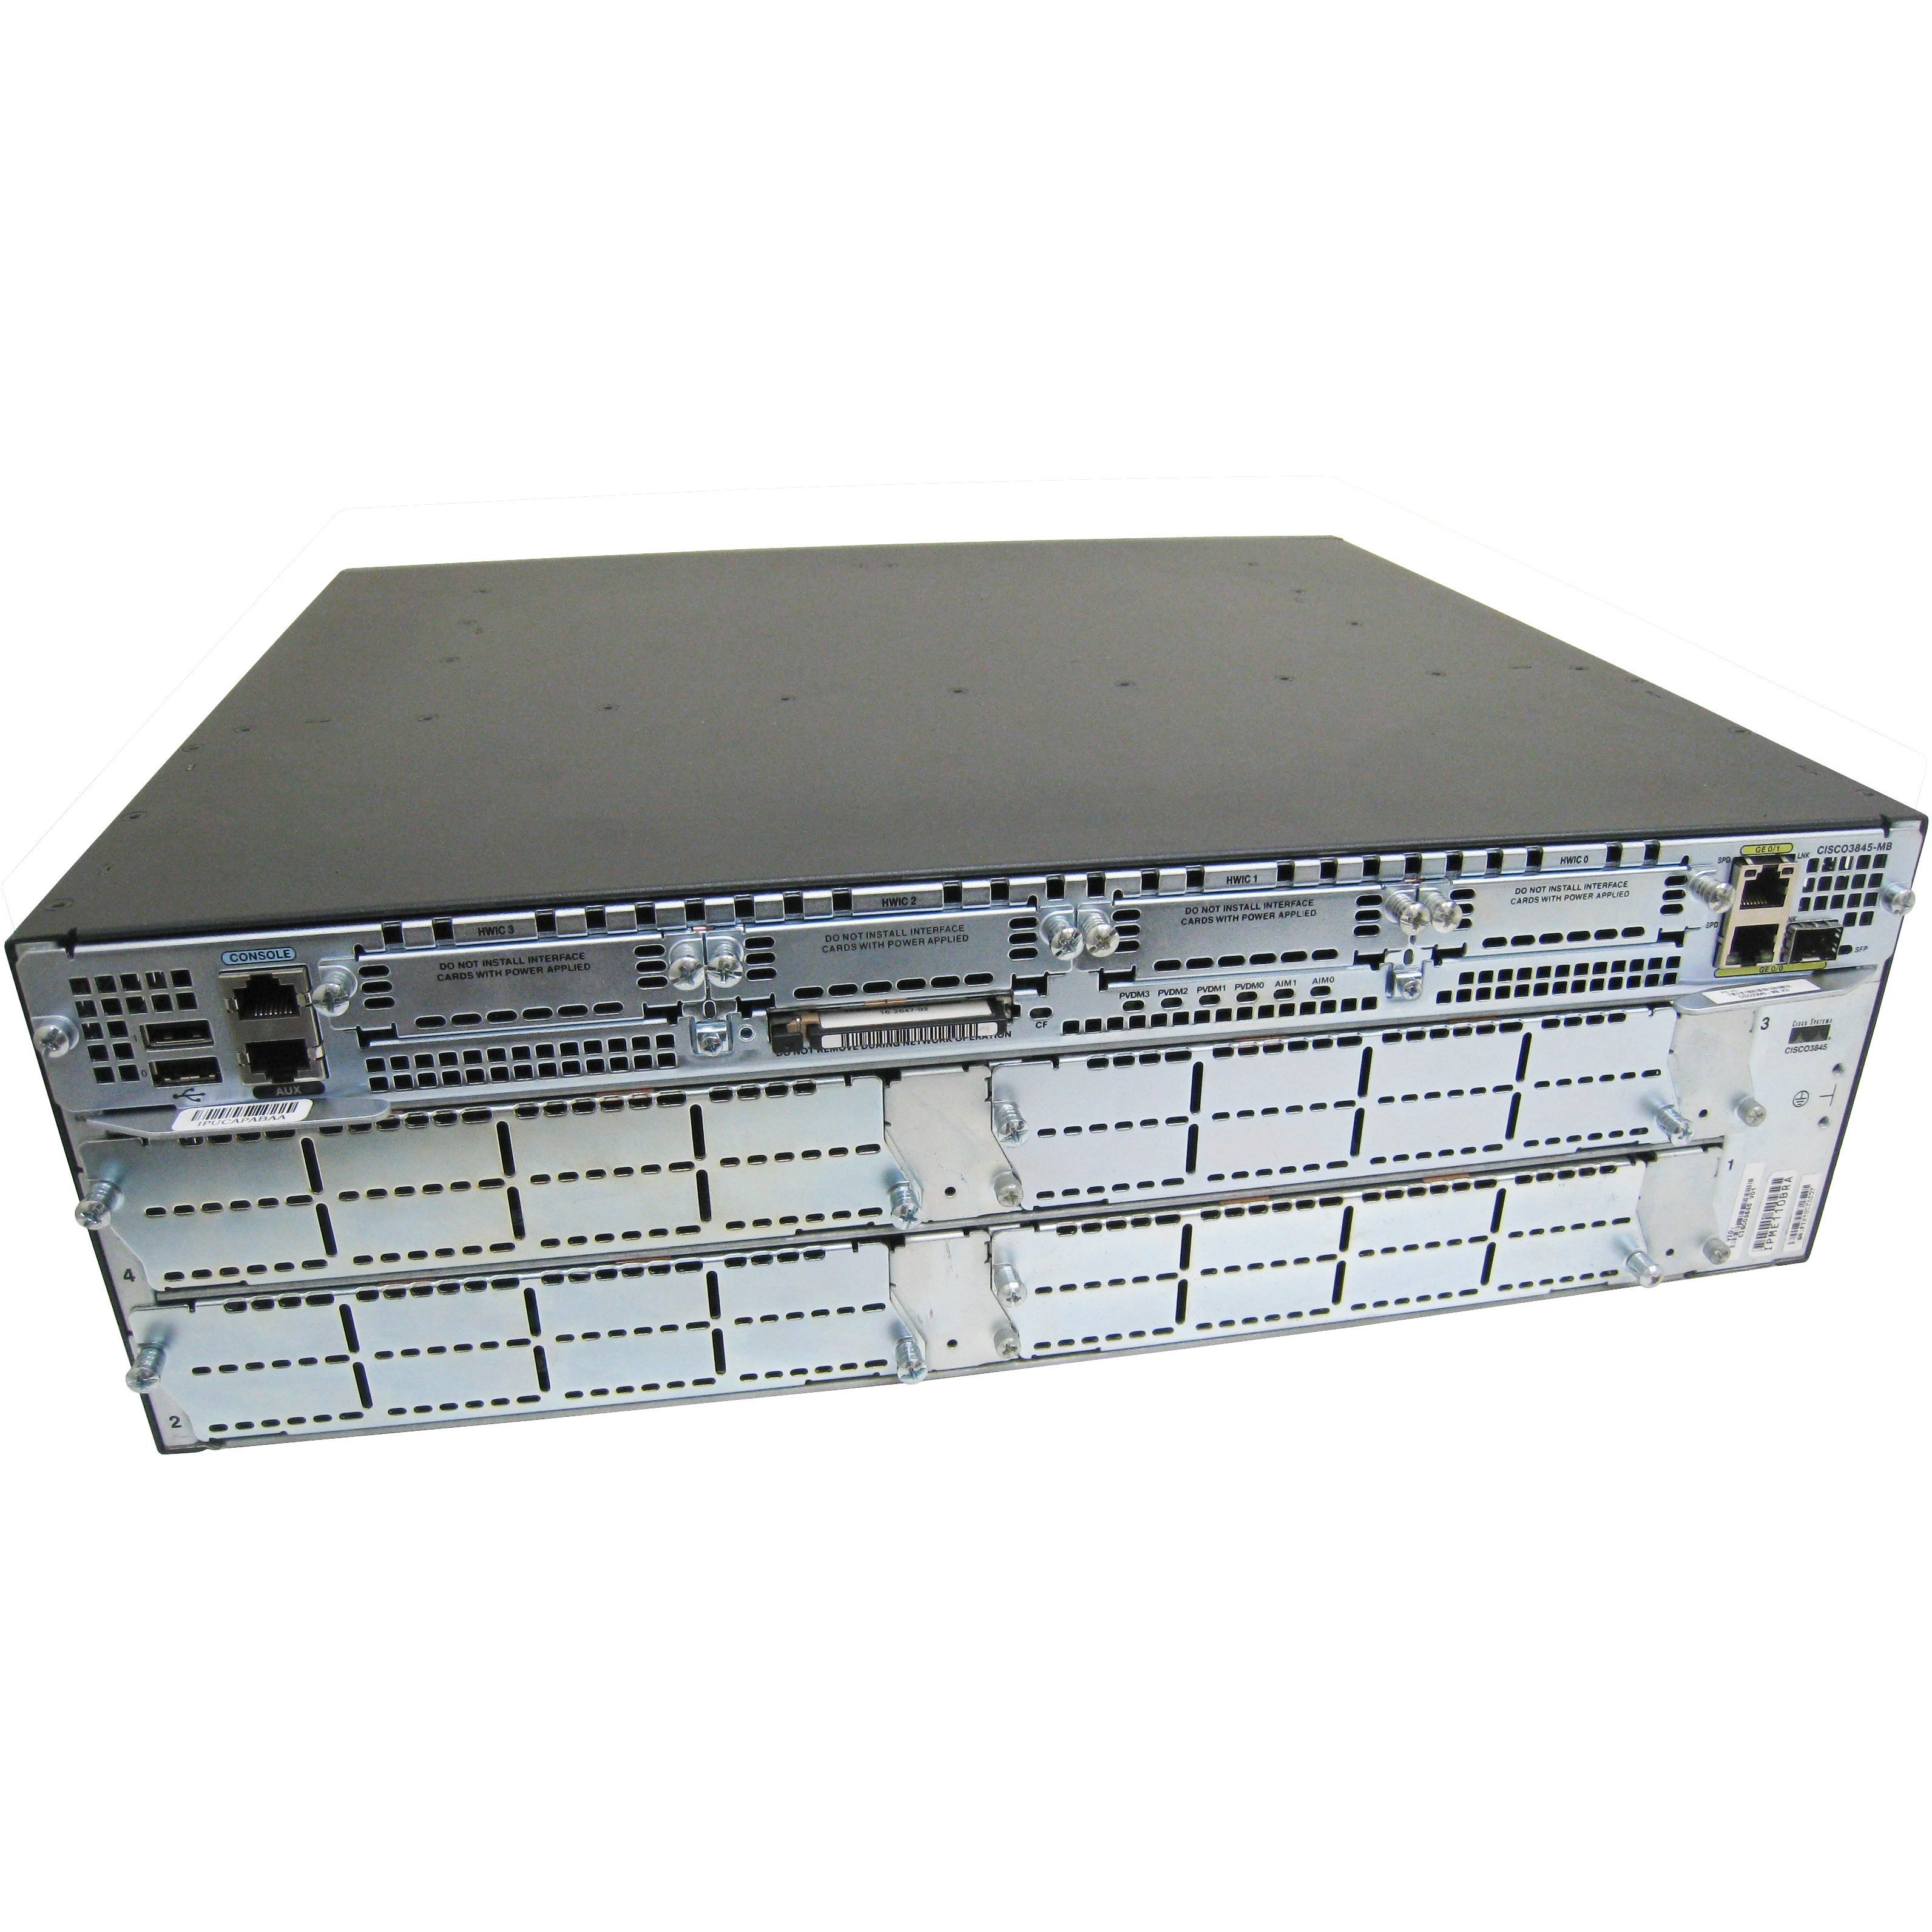 Cisco CISCO3845-WAE/K9